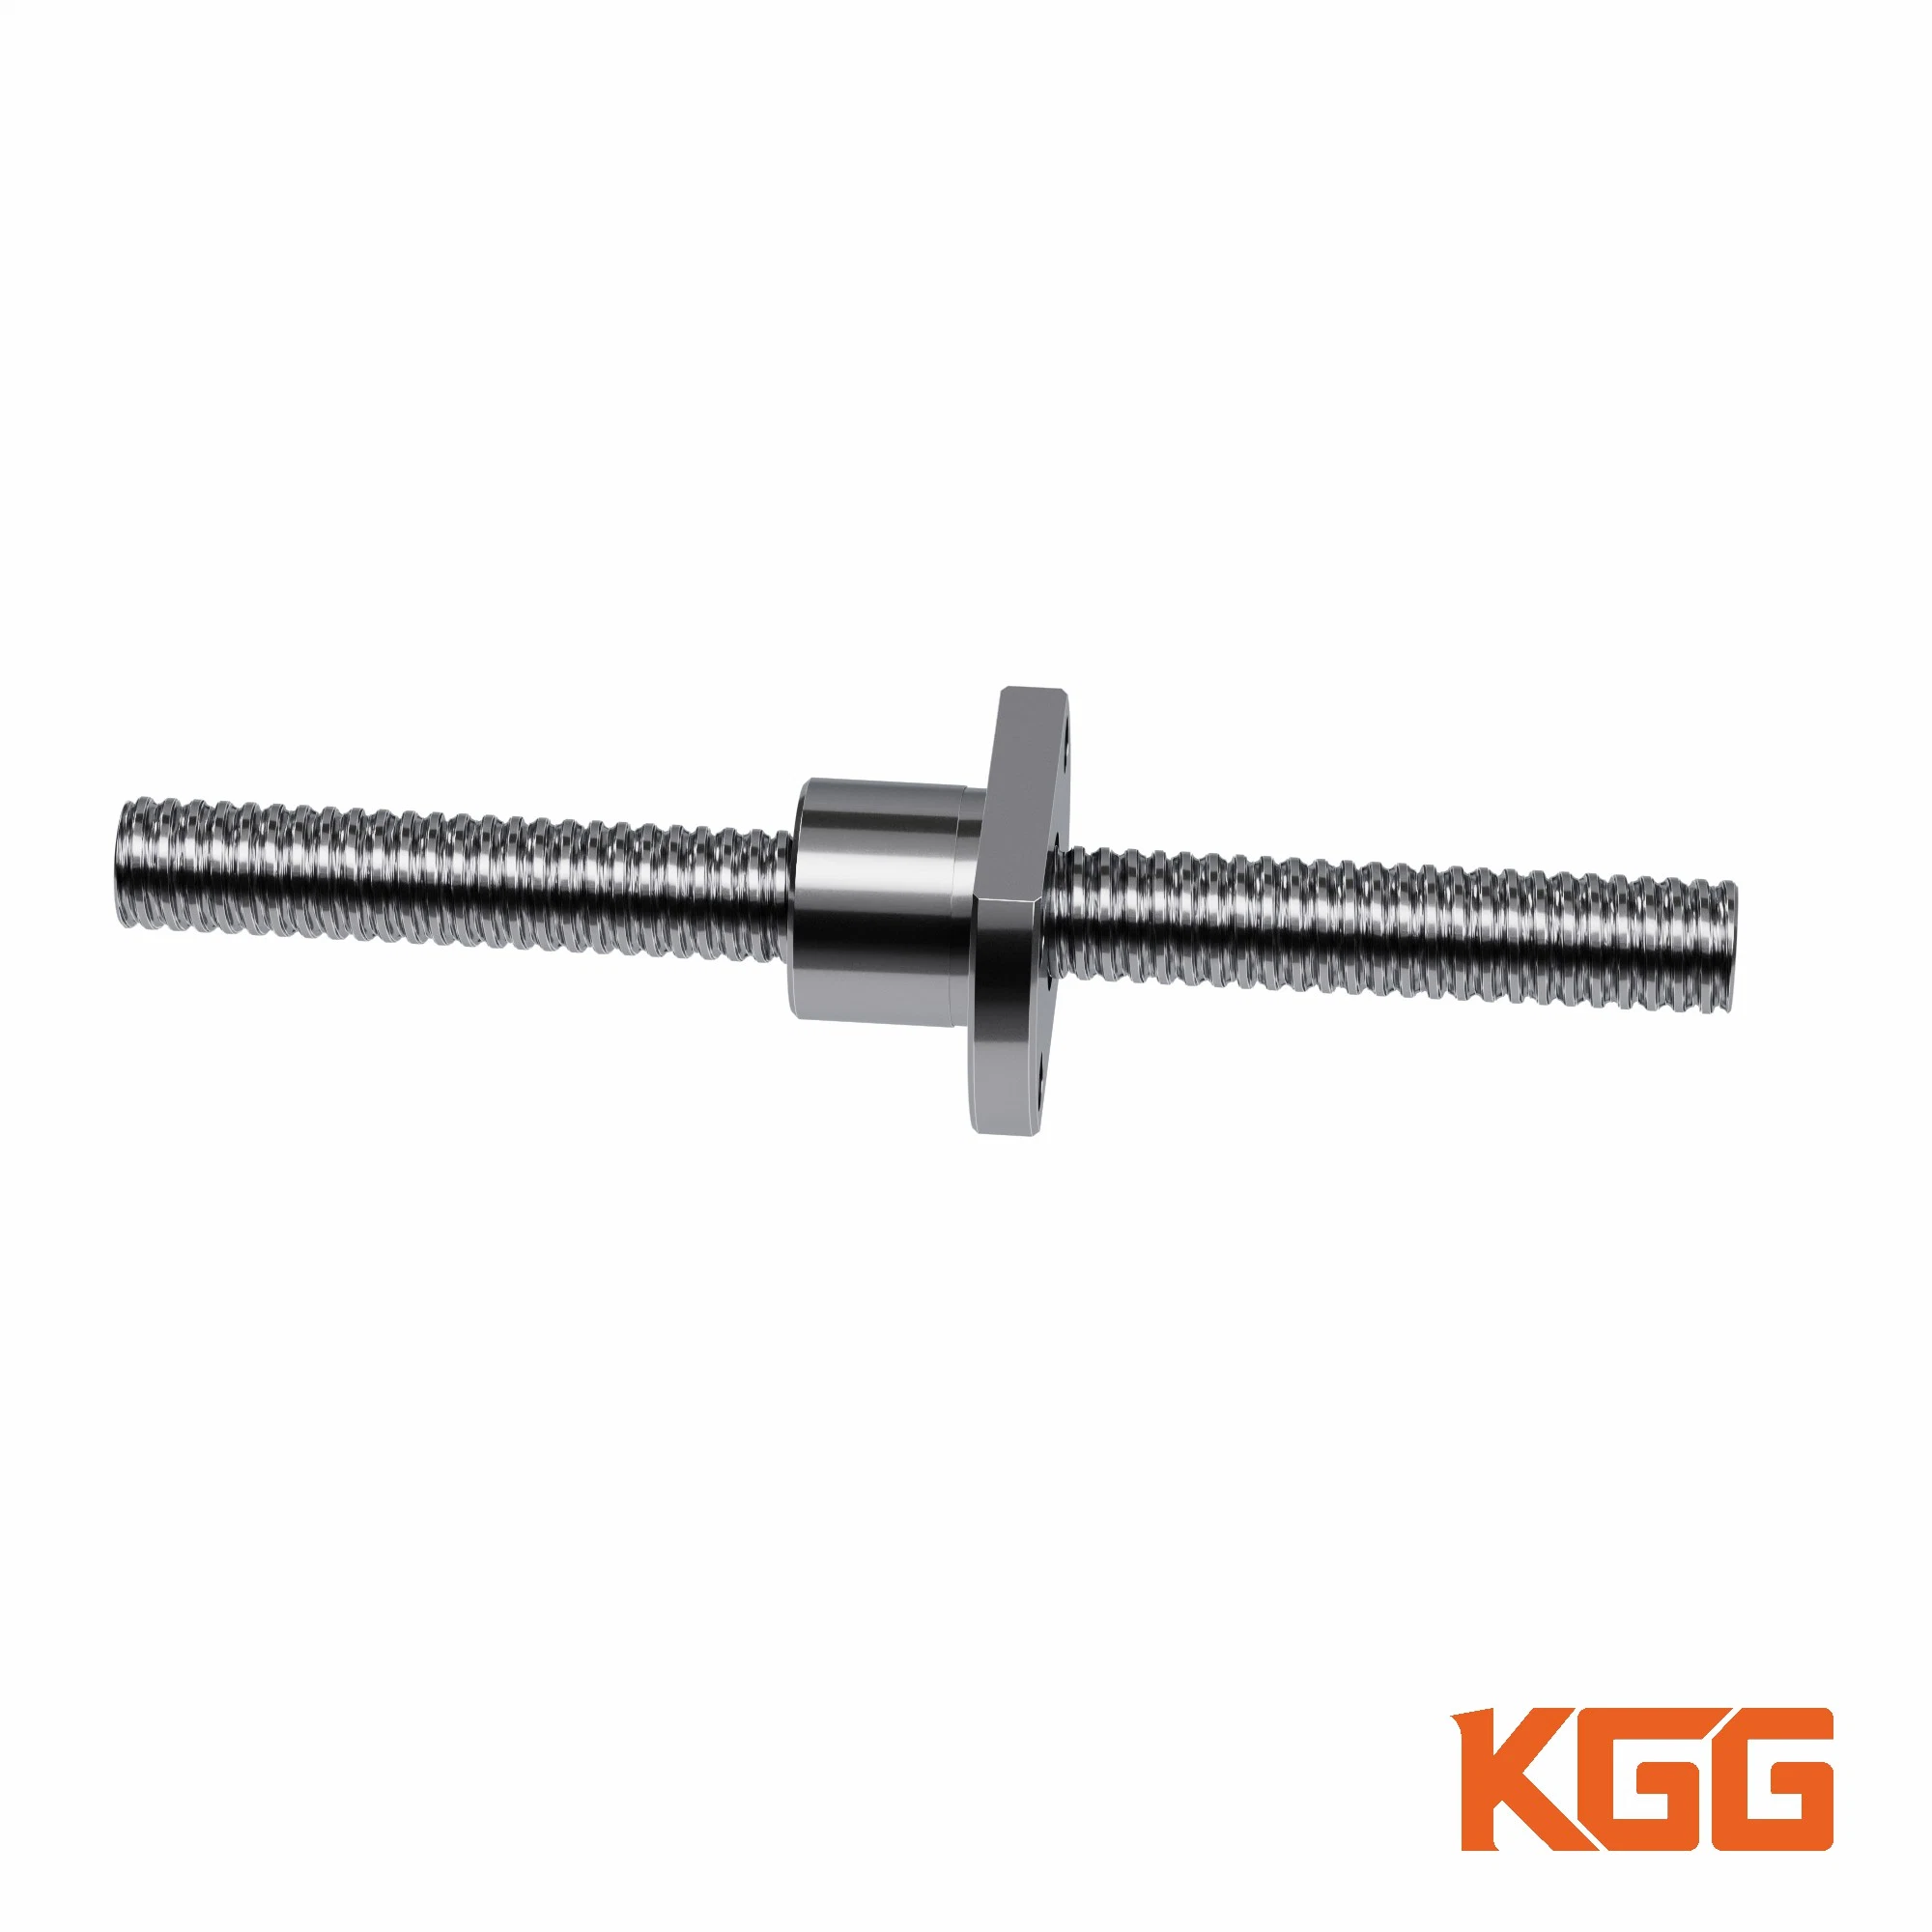 Kgg lange Kugelrollschraube für Hydraulikmaschinen (Serie GSR, Blei: 10mm, Welle: 15mm)